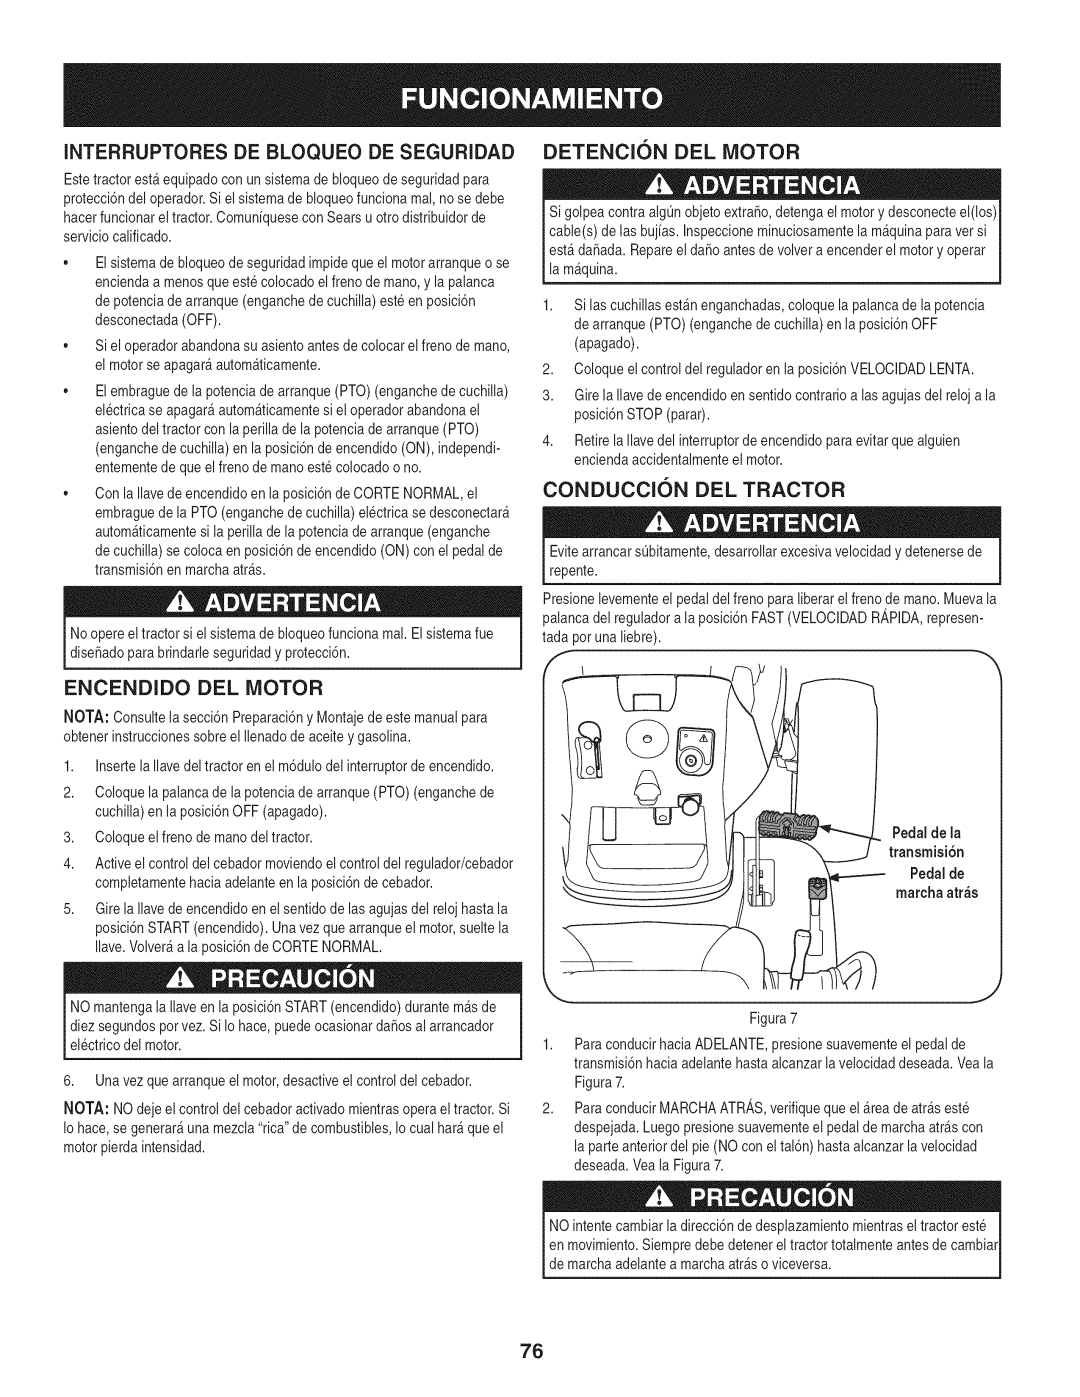 Craftsman PYT 9000, 247.28672 manual Interruptoresde Bloqueo De Seguridad, Detencion Del Motor, Conduccion Del Tractor 